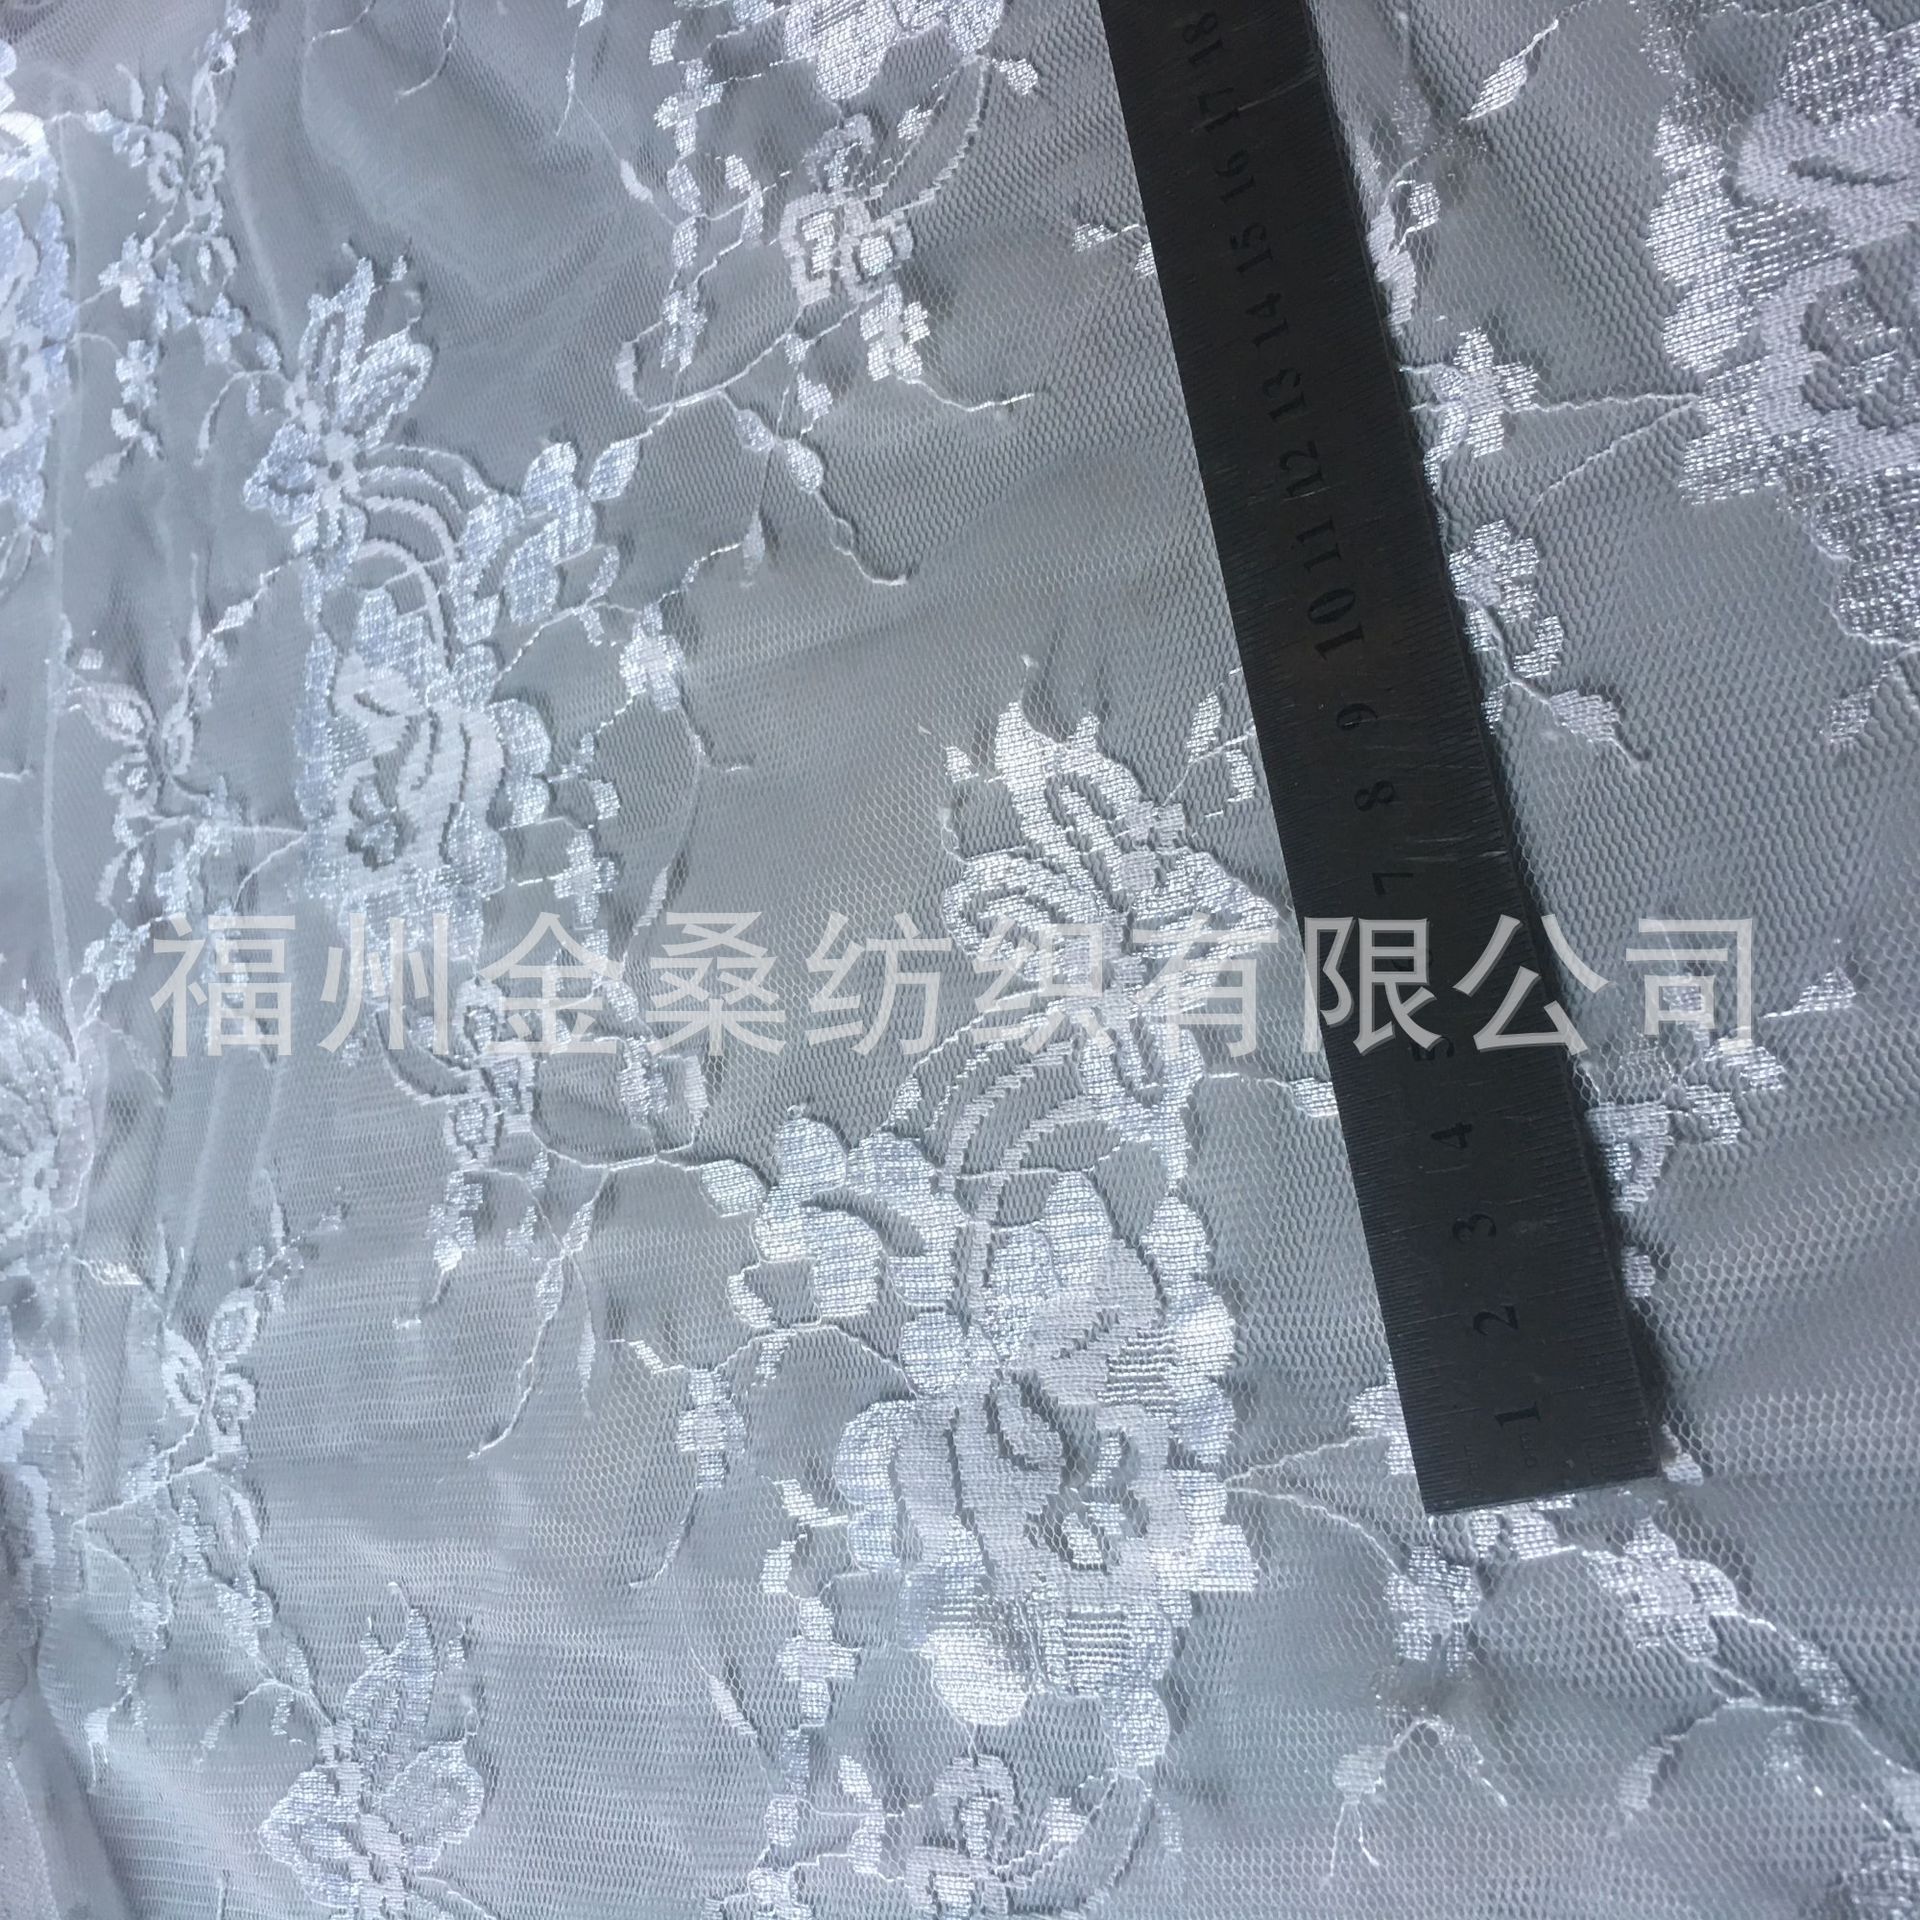 現貨供應網布GJC543柔軟貼膚蕾絲面料連衣裙透視黑白1卷起售